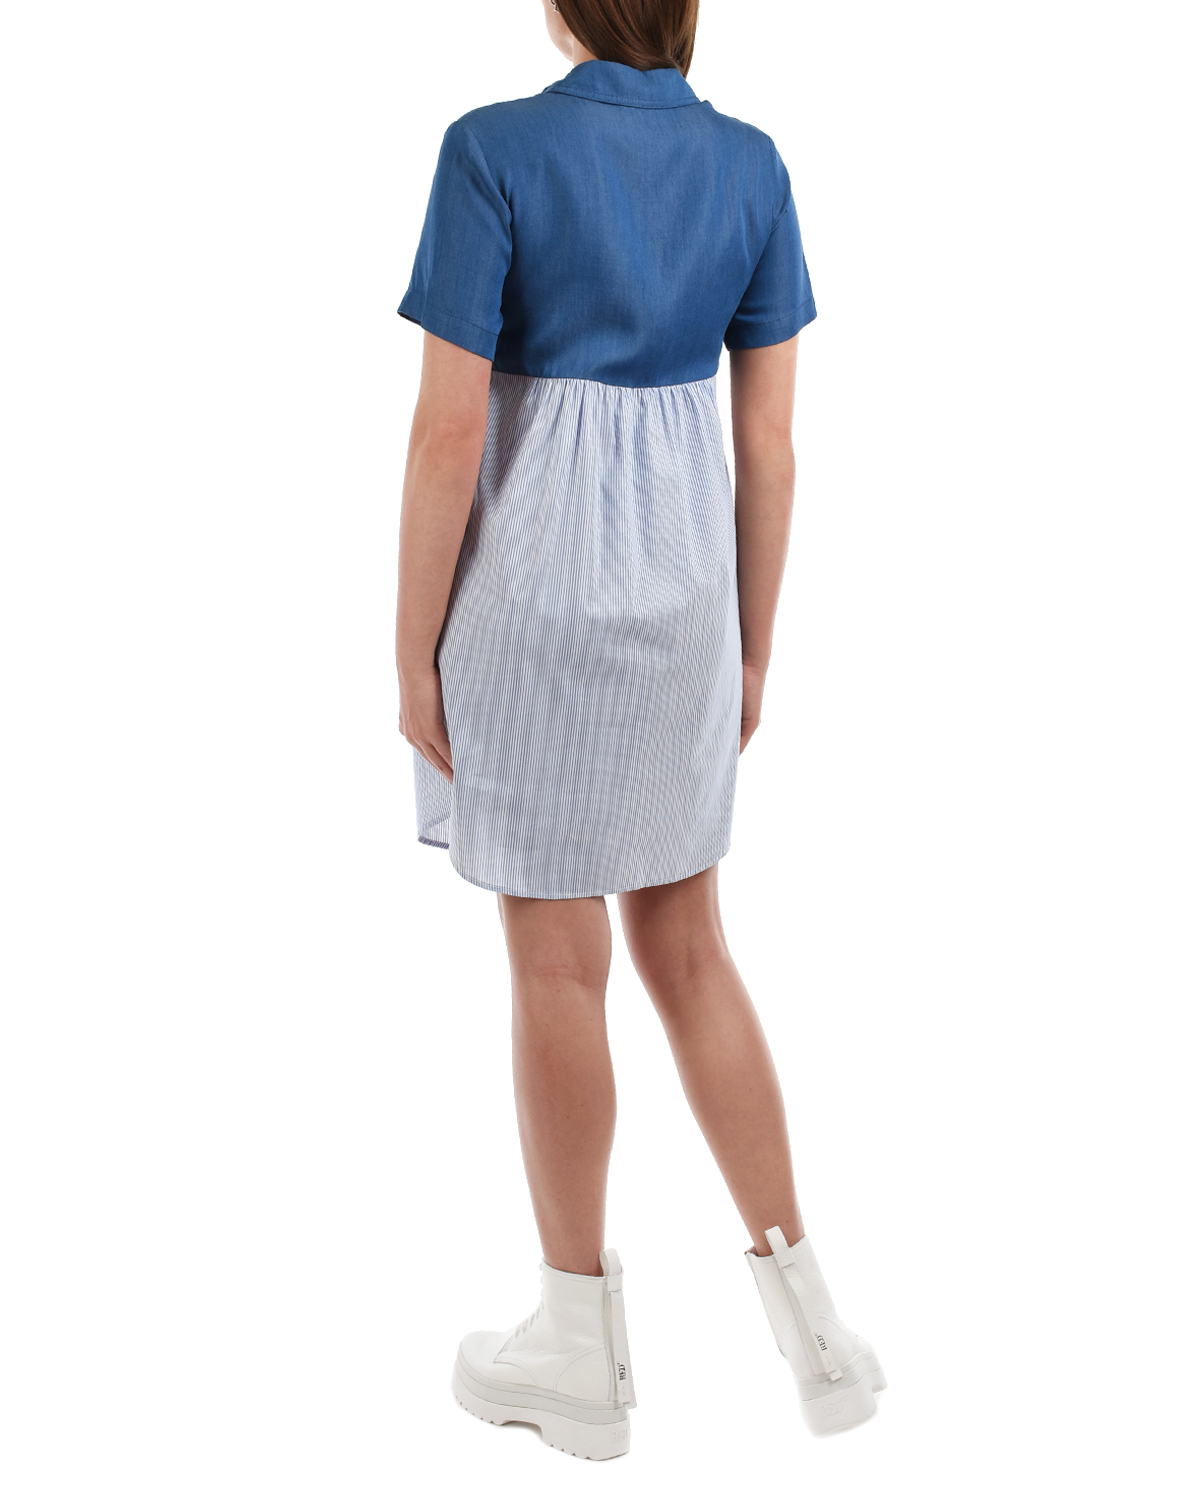 Синее платье с короткими рукавами Attesa, размер 38, цвет синий - фото 3